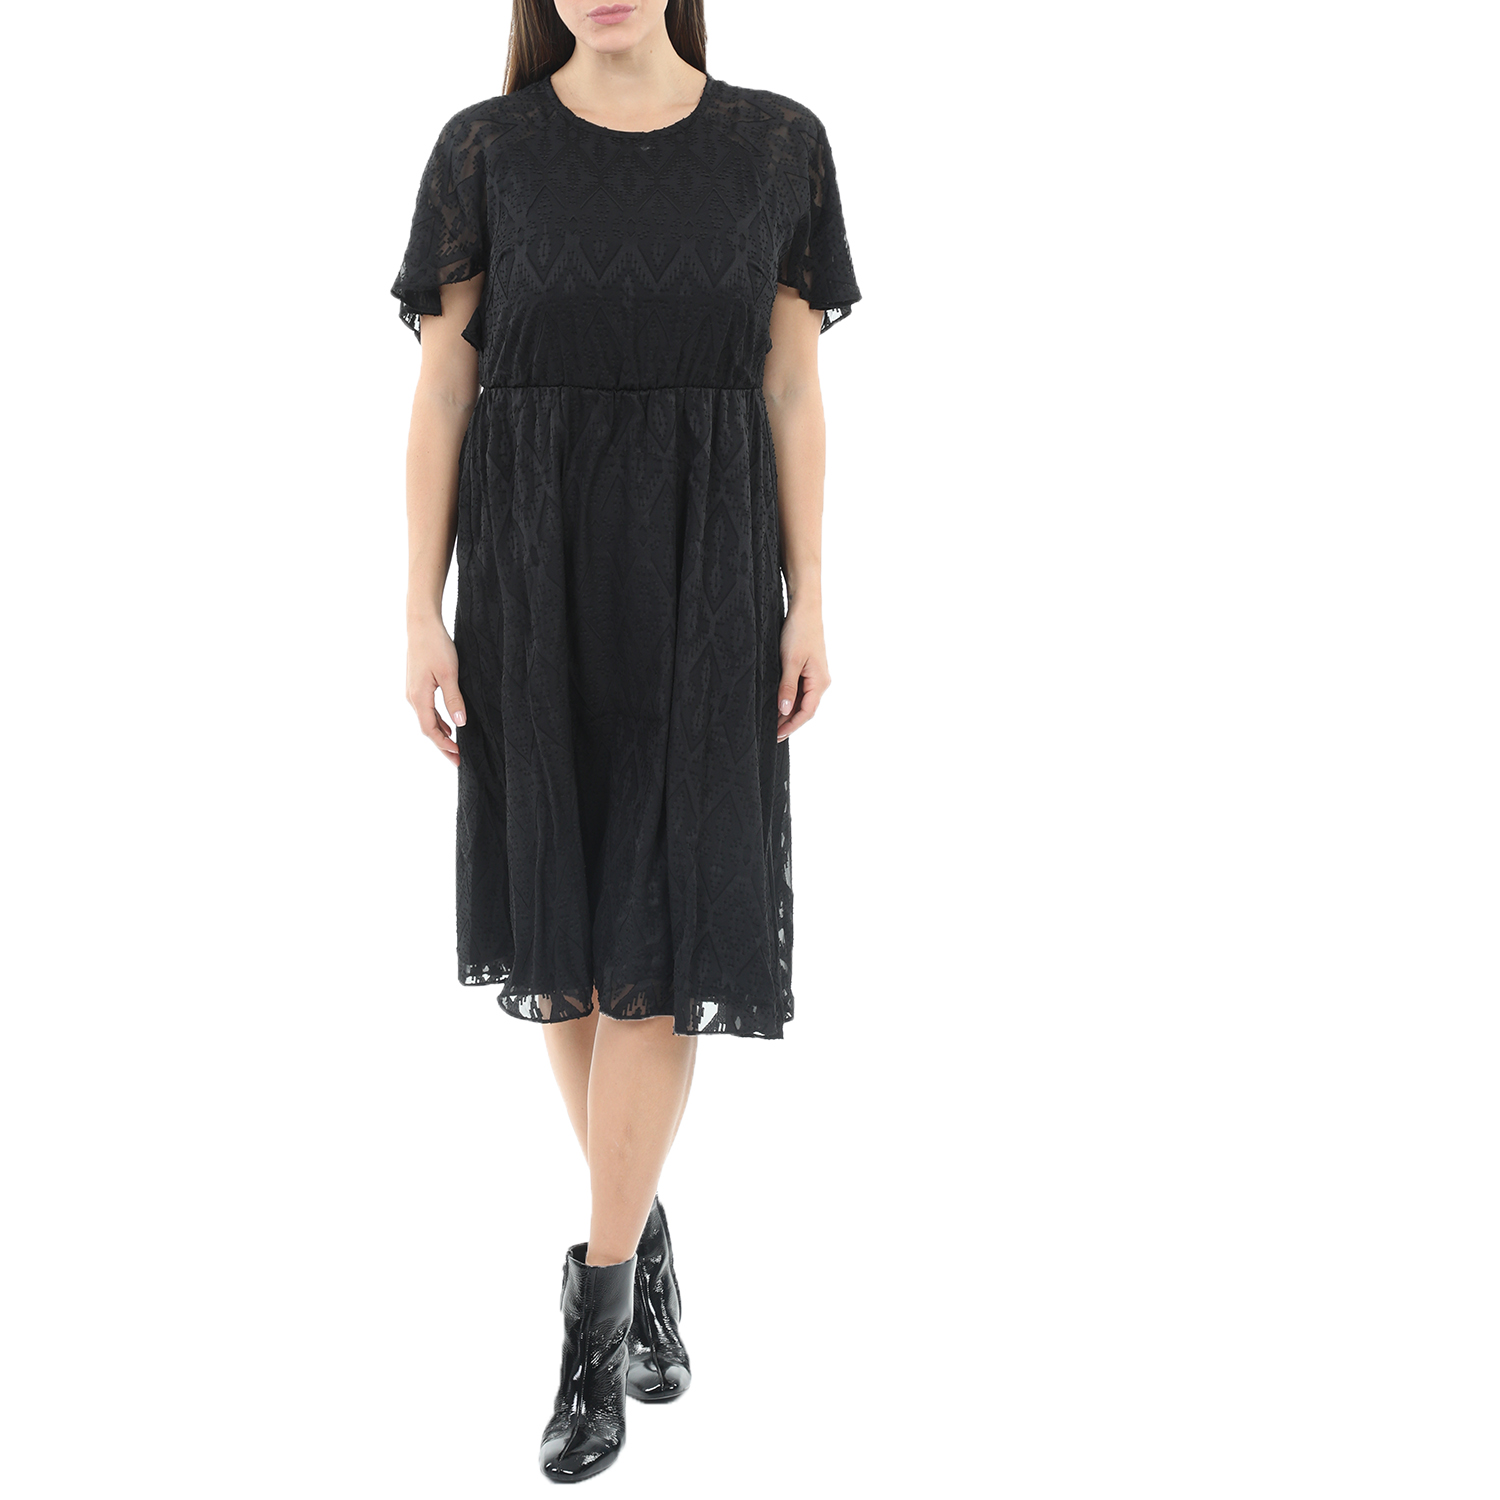 Γυναικεία/Ρούχα/Φορέματα/Μίνι SCOTCH & SODA - Γυναικείο midi φόρεμα SCOTCH & SODA μαύρο